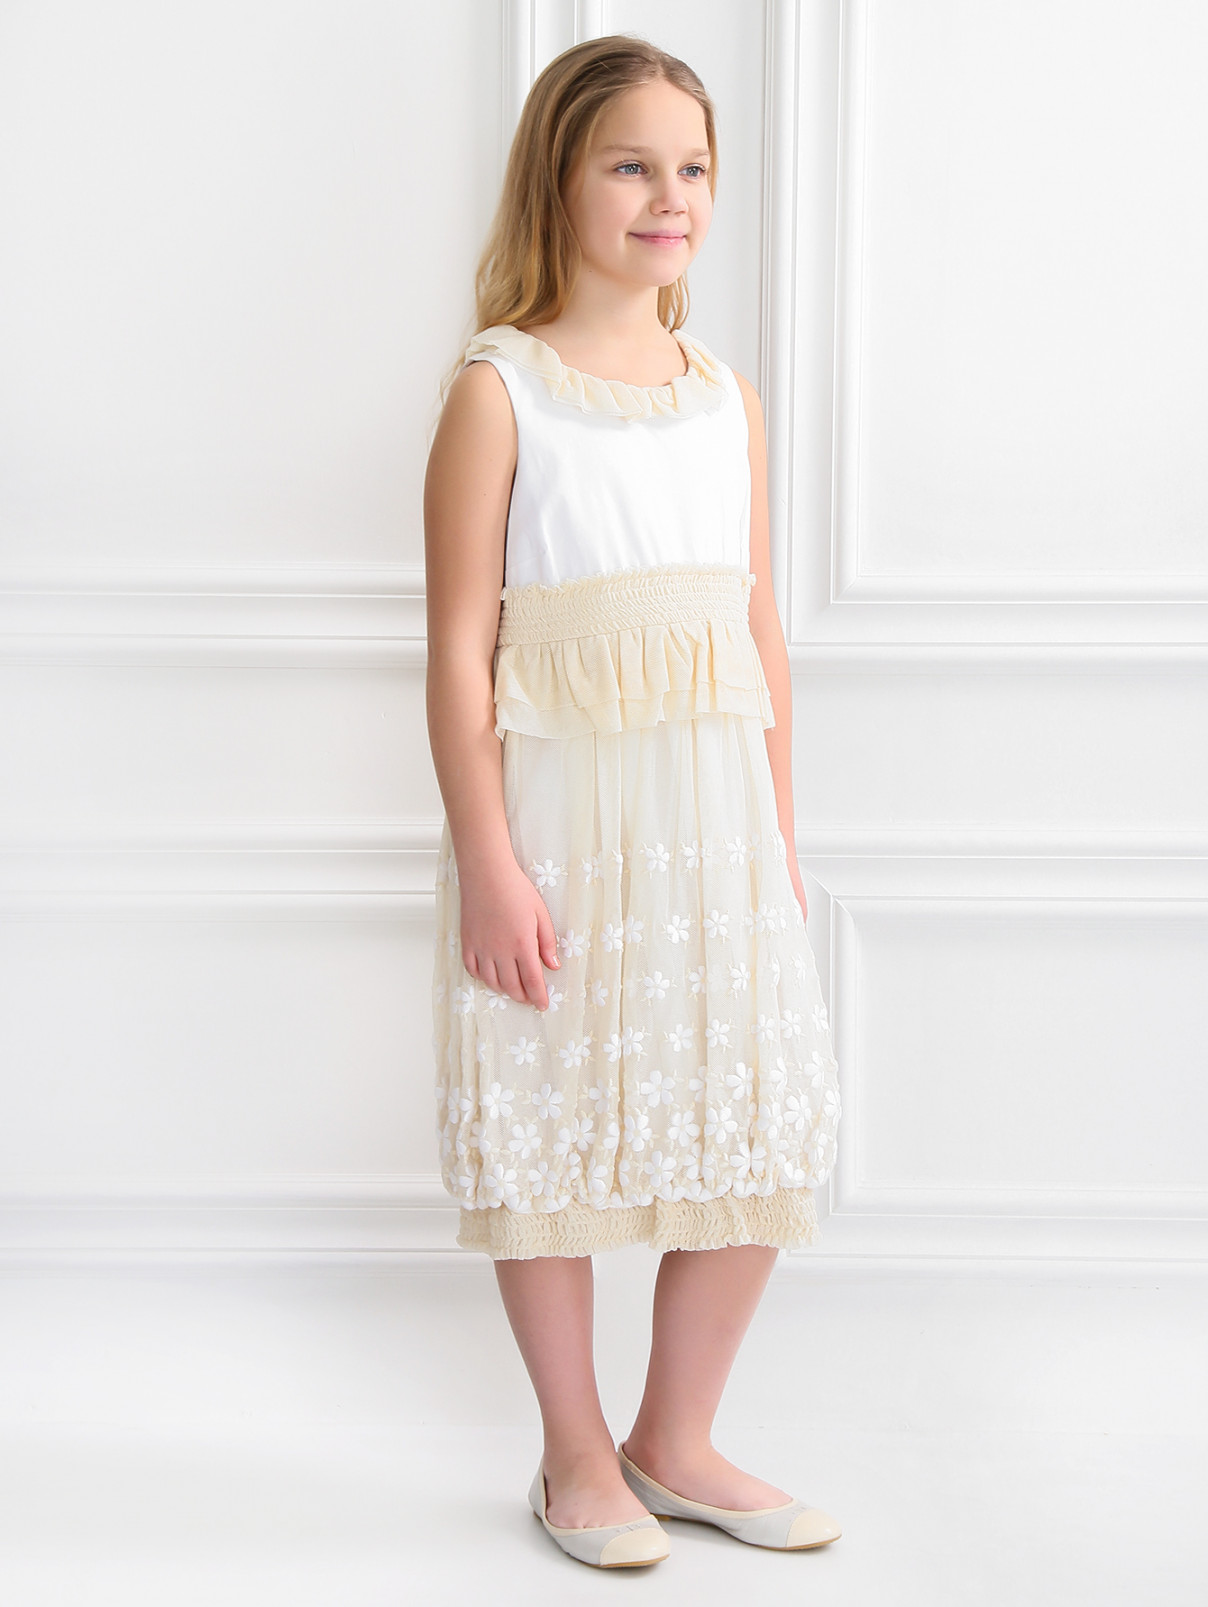 Платье на завышенной талии с декором MiMiSol  –  Модель Общий вид  – Цвет:  Белый